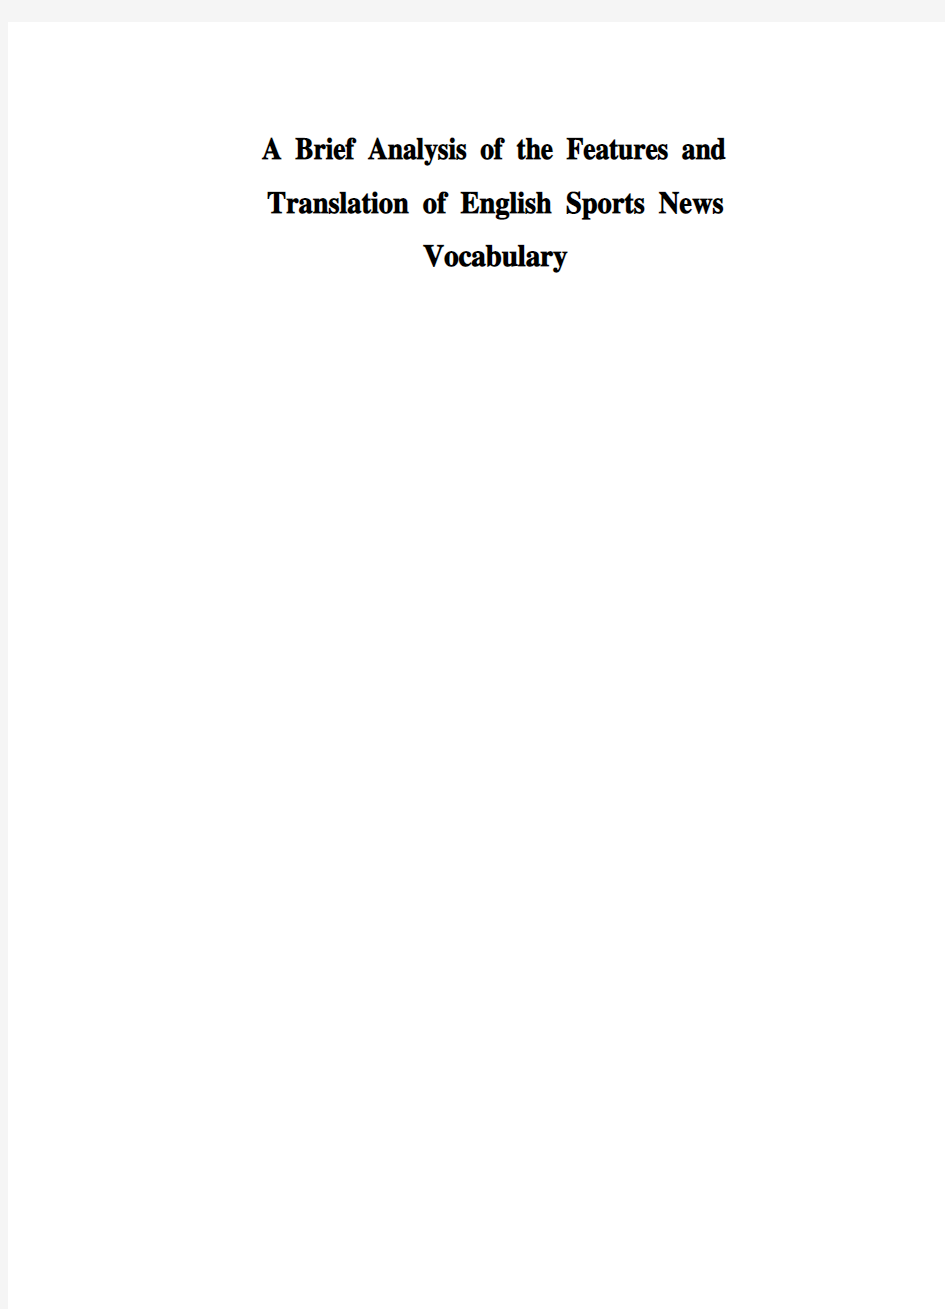 英文毕业论文 浅析英语体育新闻词汇的特点及翻译策略